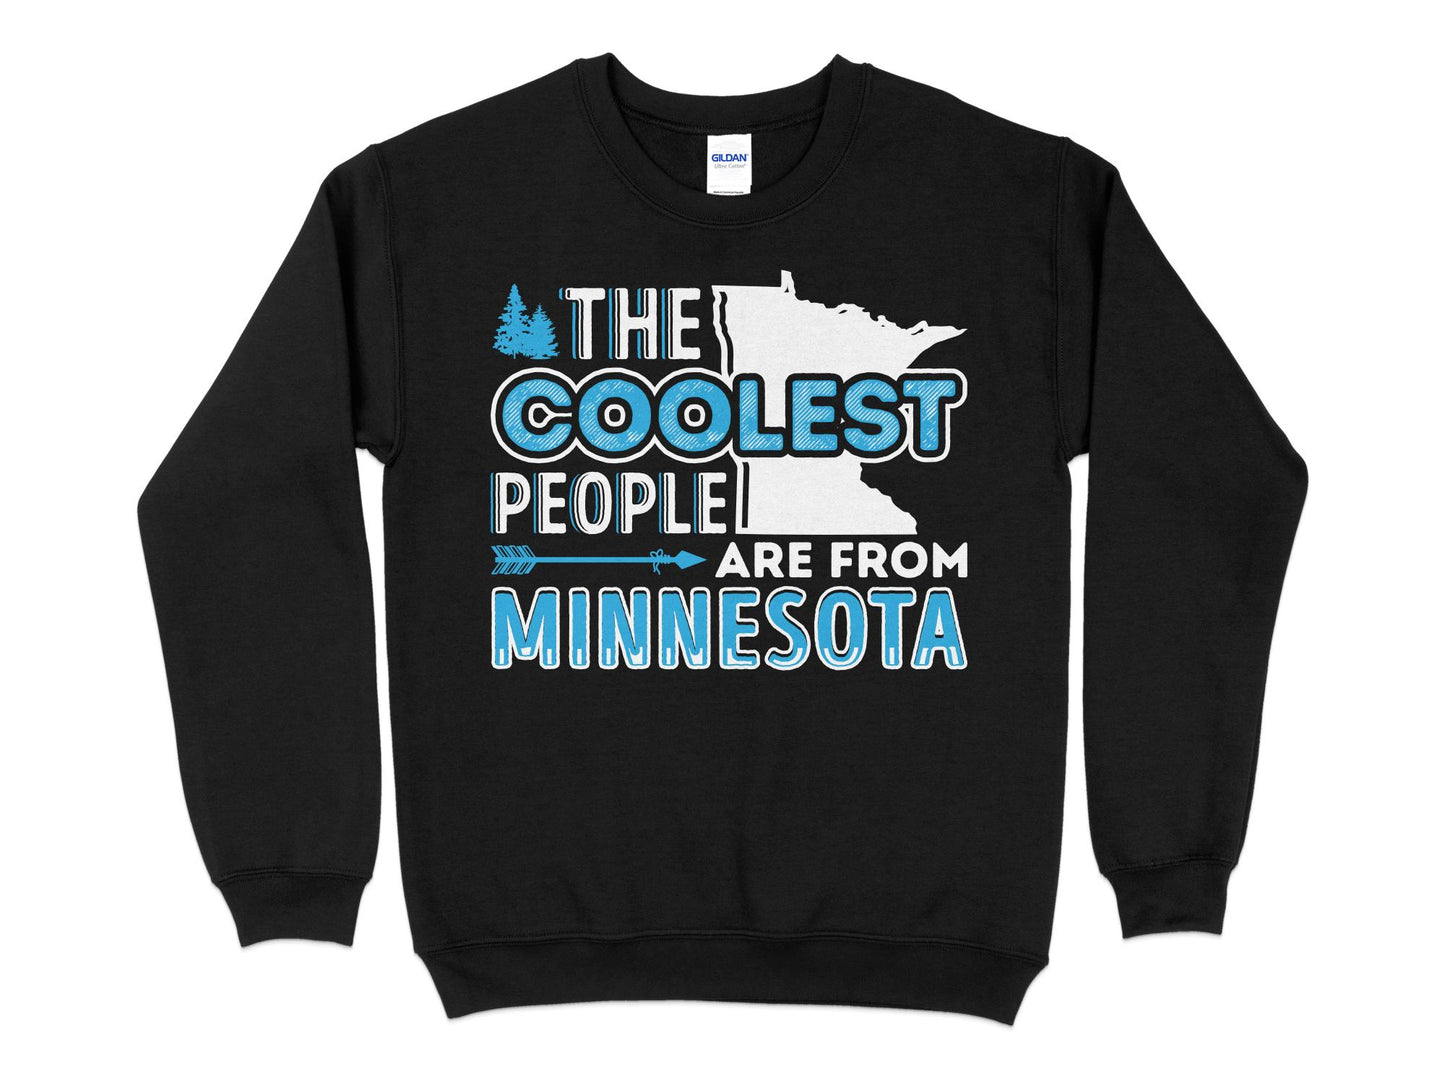 Minnesota Sweatshirt - The Coolest People Are From Minnesota, black